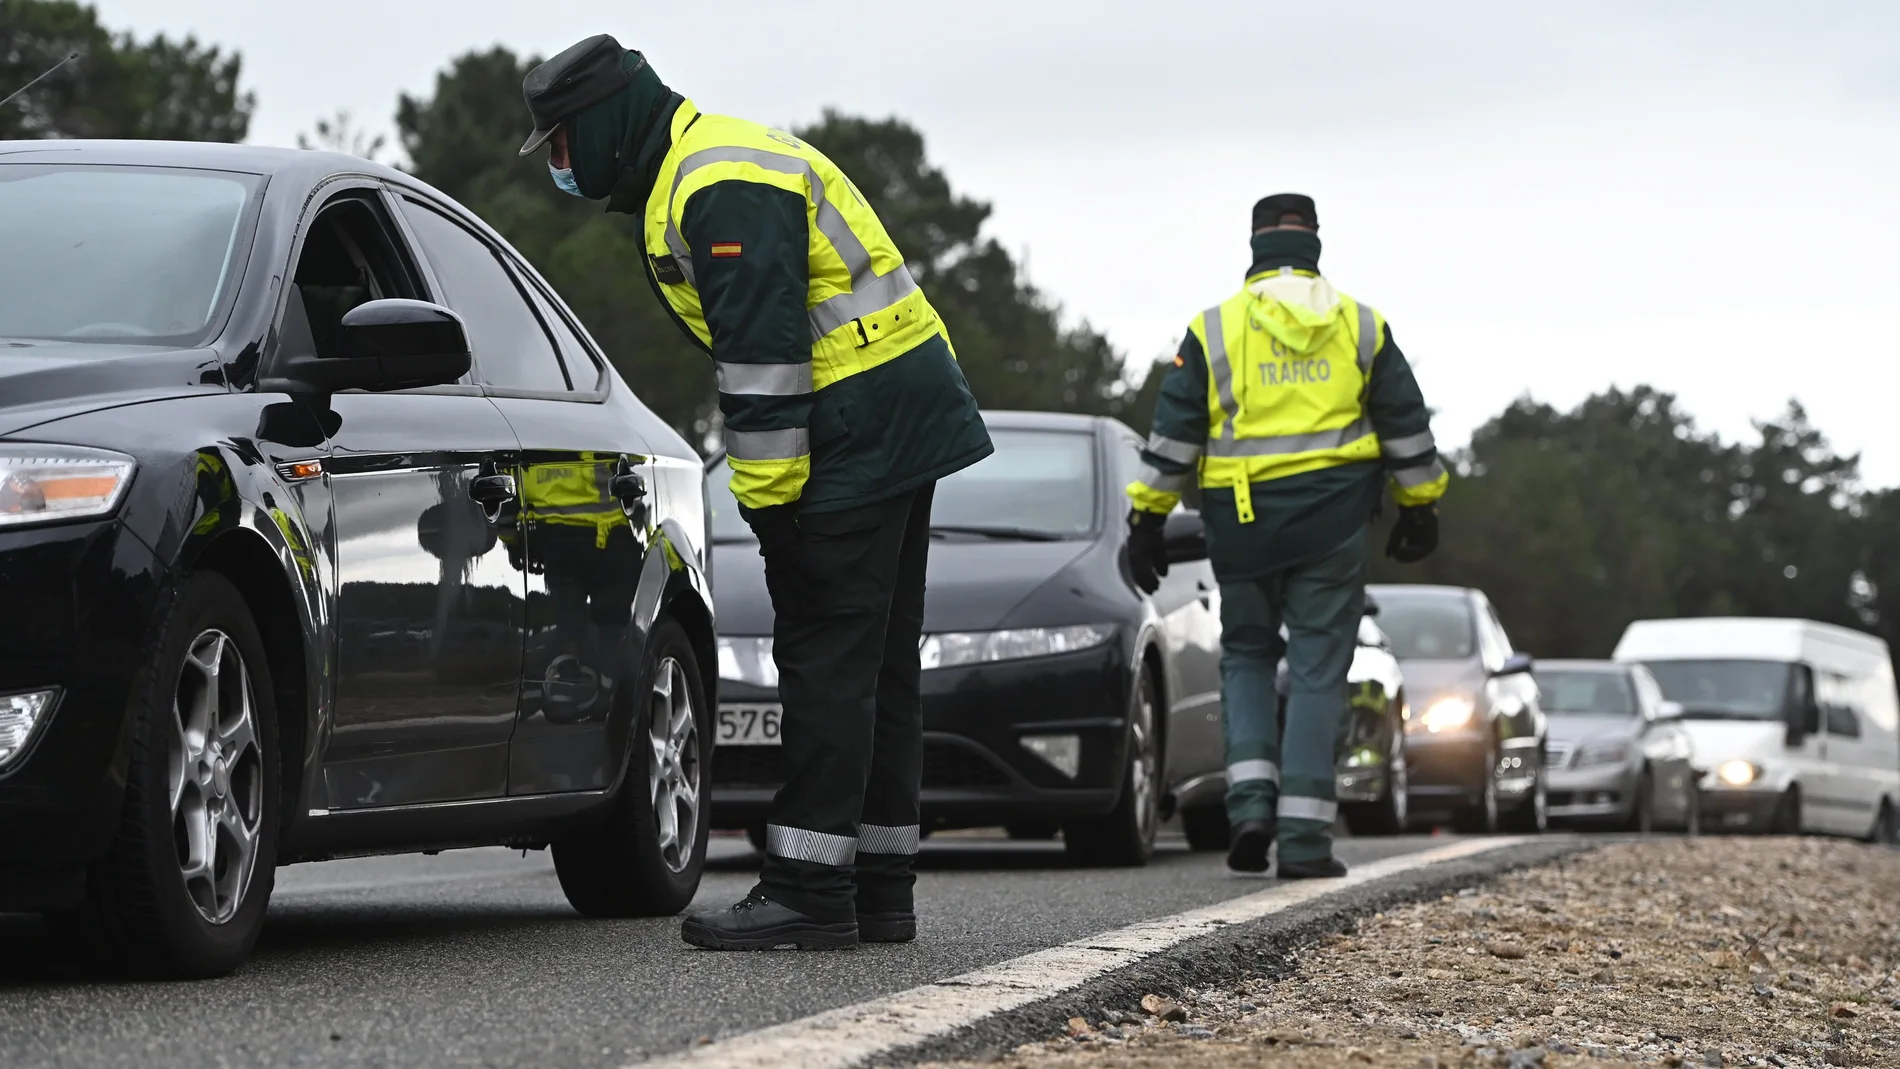 Varios guardias civiles de tráfico montan un control de carretera para controlar las entradas y salidas de Madrid durante la pandemia